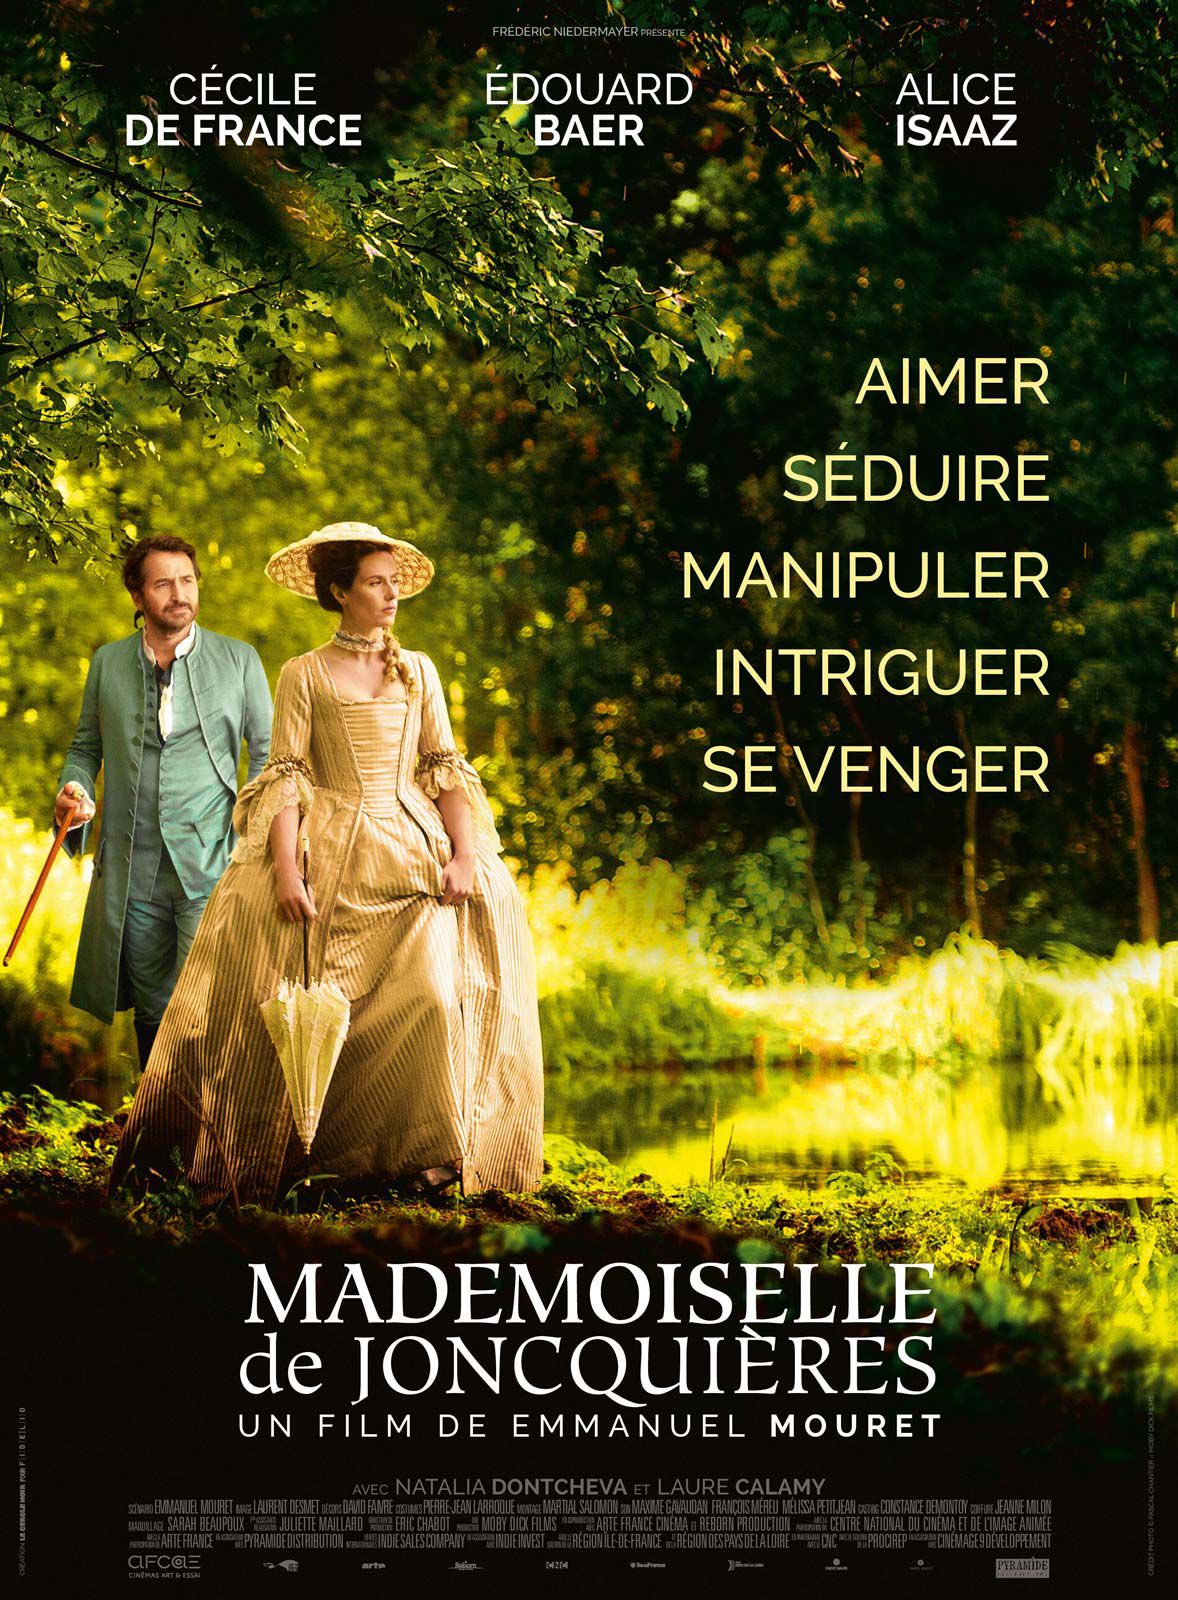 Mademoiselle de Joncquières - Film (2018) streaming VF gratuit complet